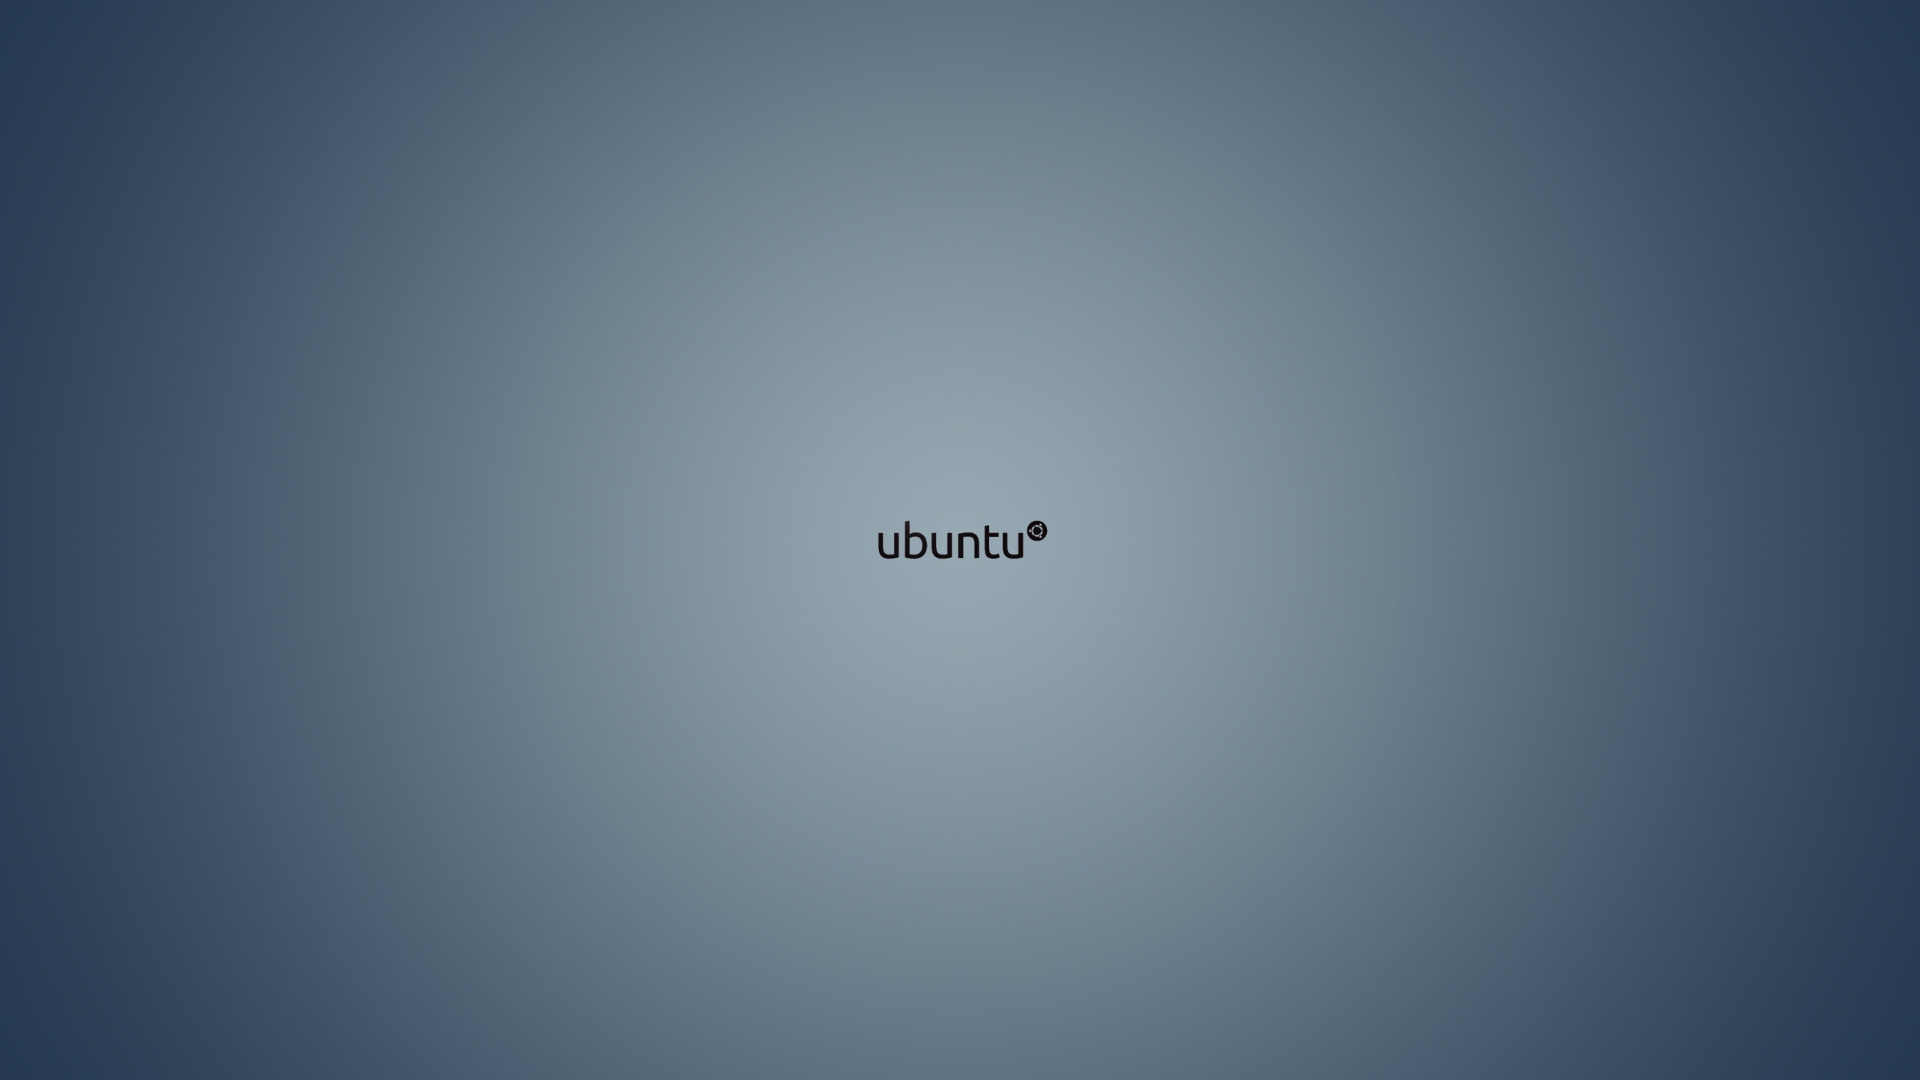 Ubuntu Backgrounds | PixelsTalk.Net